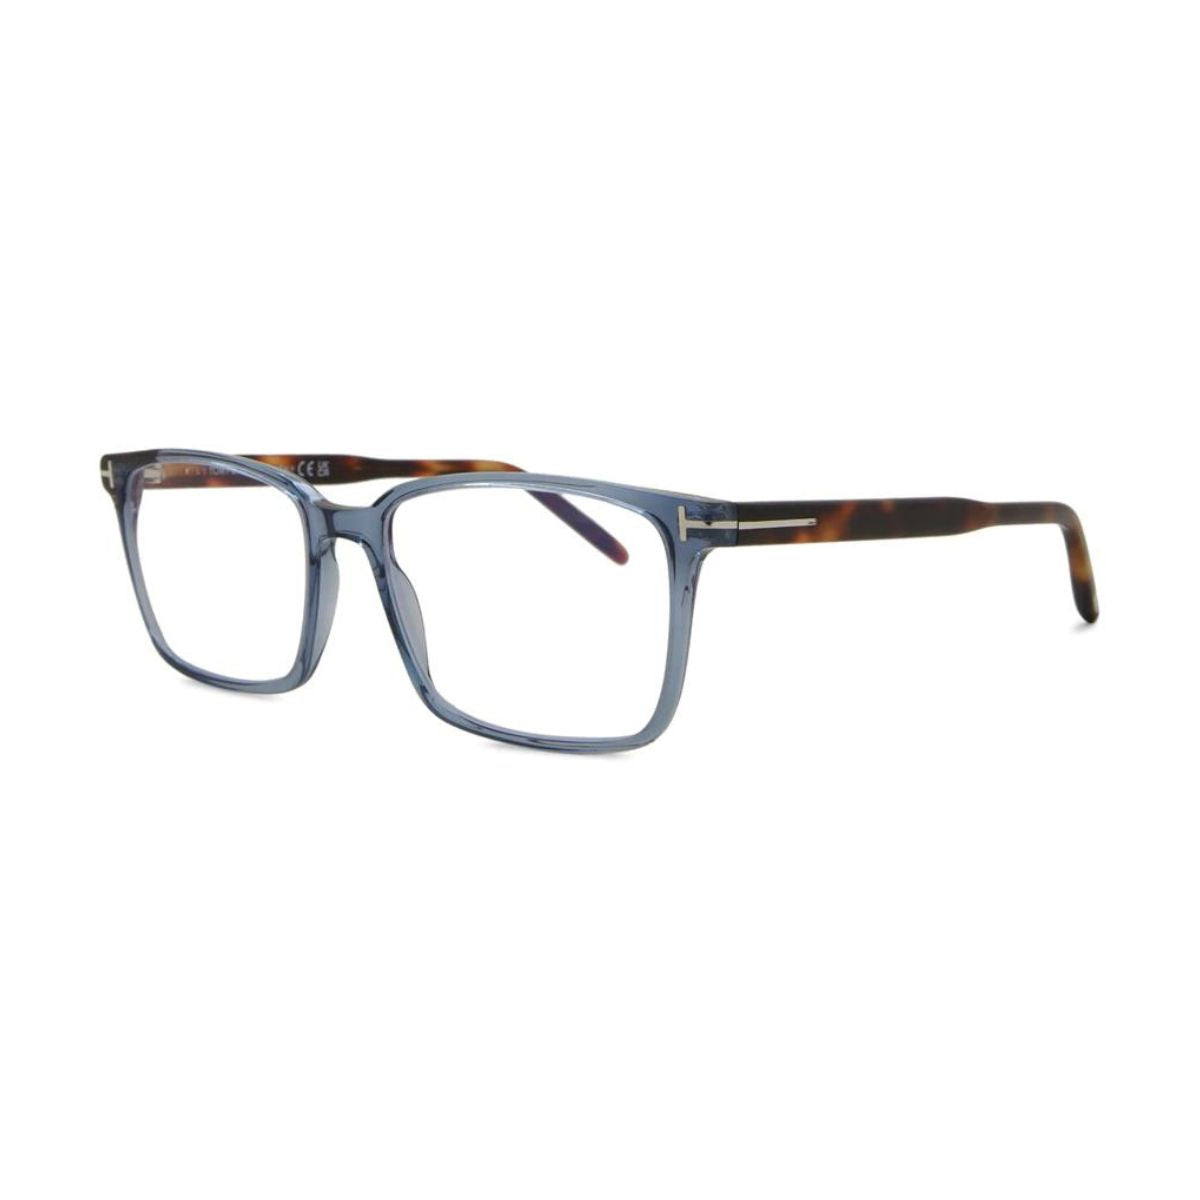 "Tom Ford 5802-B 090 optical eyewear frame for men and women at optorium"